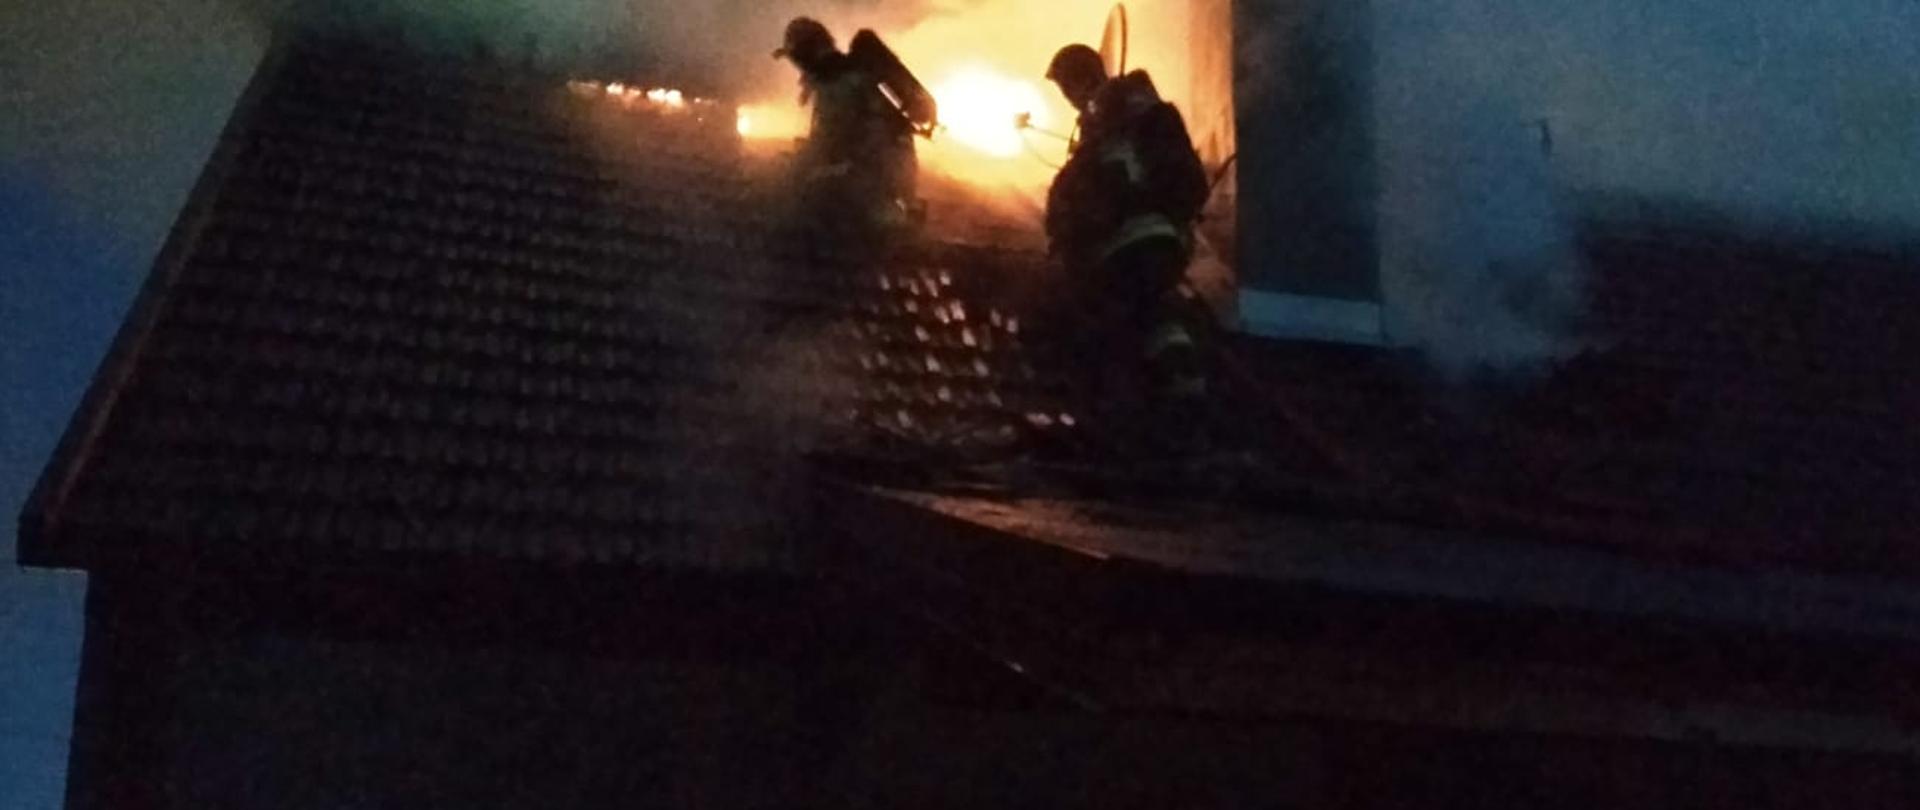 Zdjęcie przedstawia wydobywające się płomienie z dachu budynku mieszkalnego jednorodzinnego oraz dwóch strażaków na dachu domu podejmujących działania gaśnicze w celu ugaszenia pożaru. Z prawej strony zdjęcia widać również trzeciego strażaka